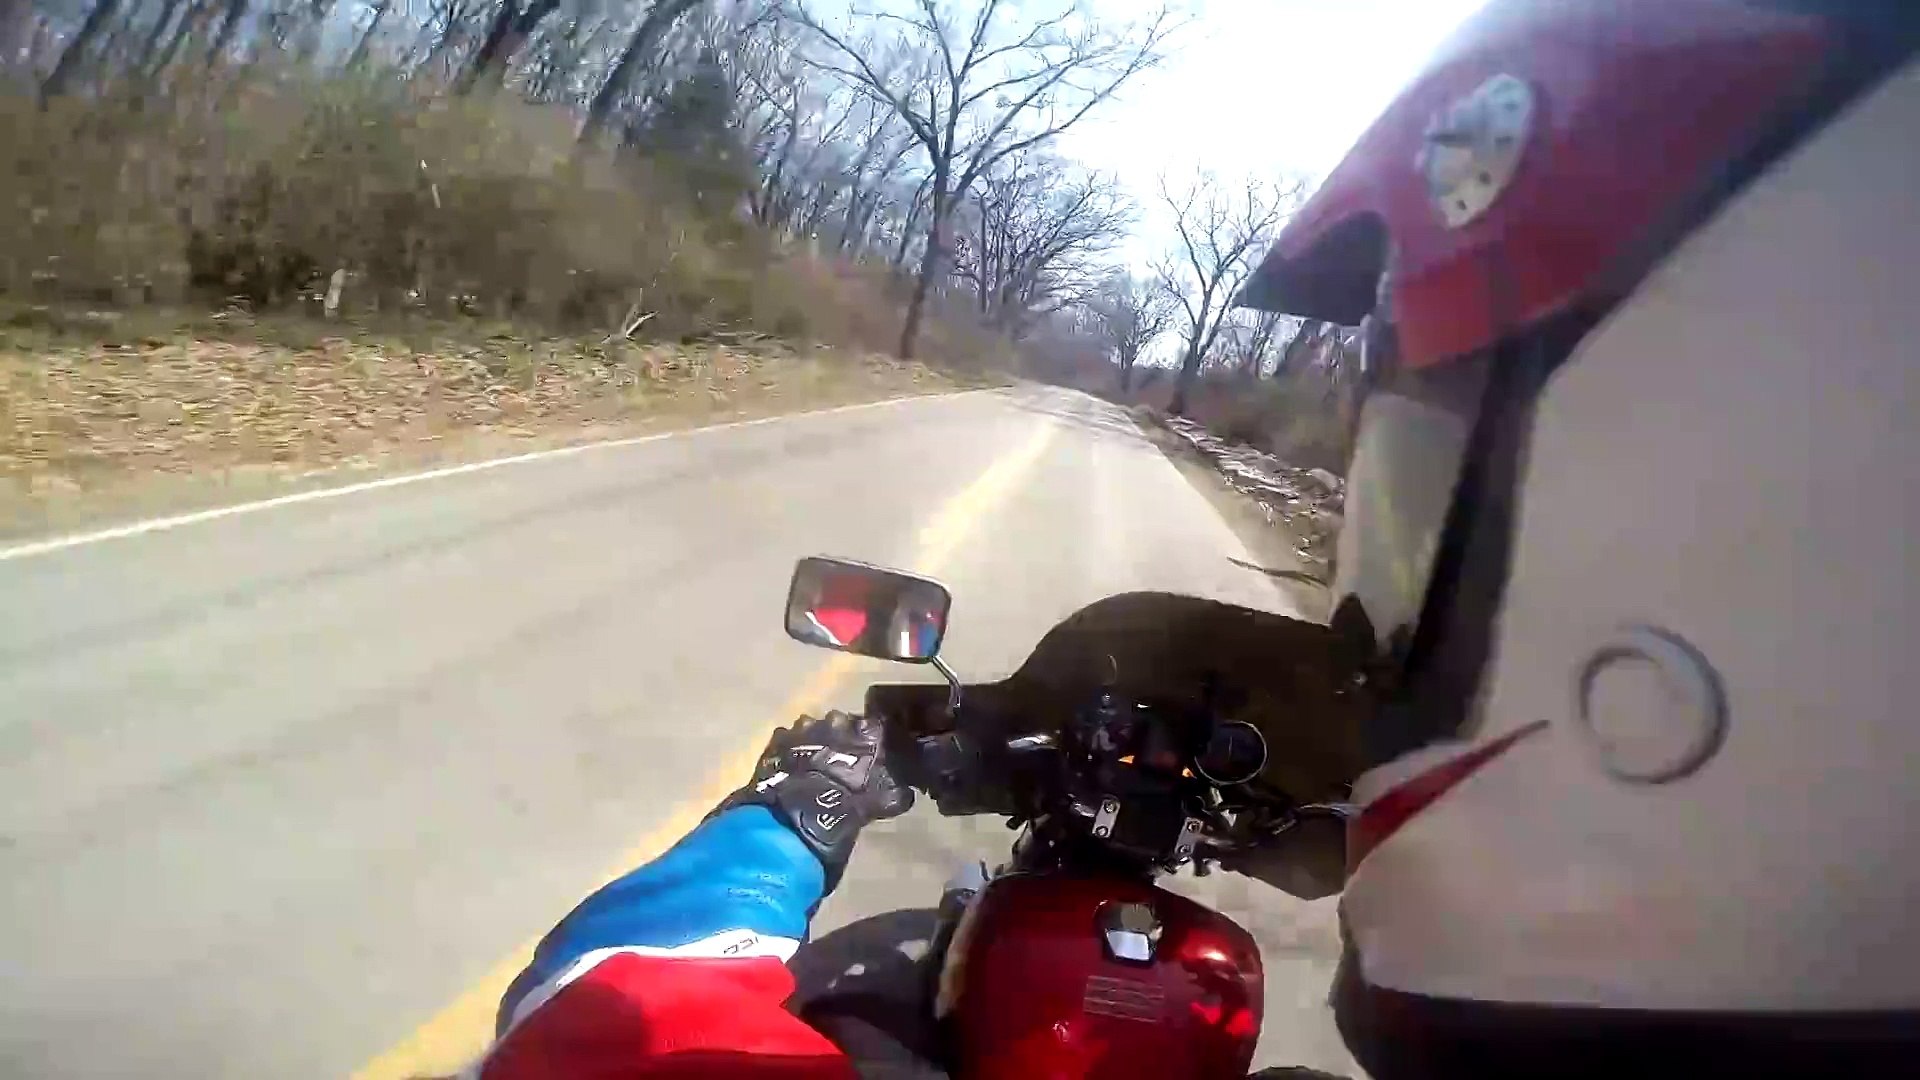 Grosse chute à moto à plus de 100km/h - Accident violent - Vidéo Dailymotion